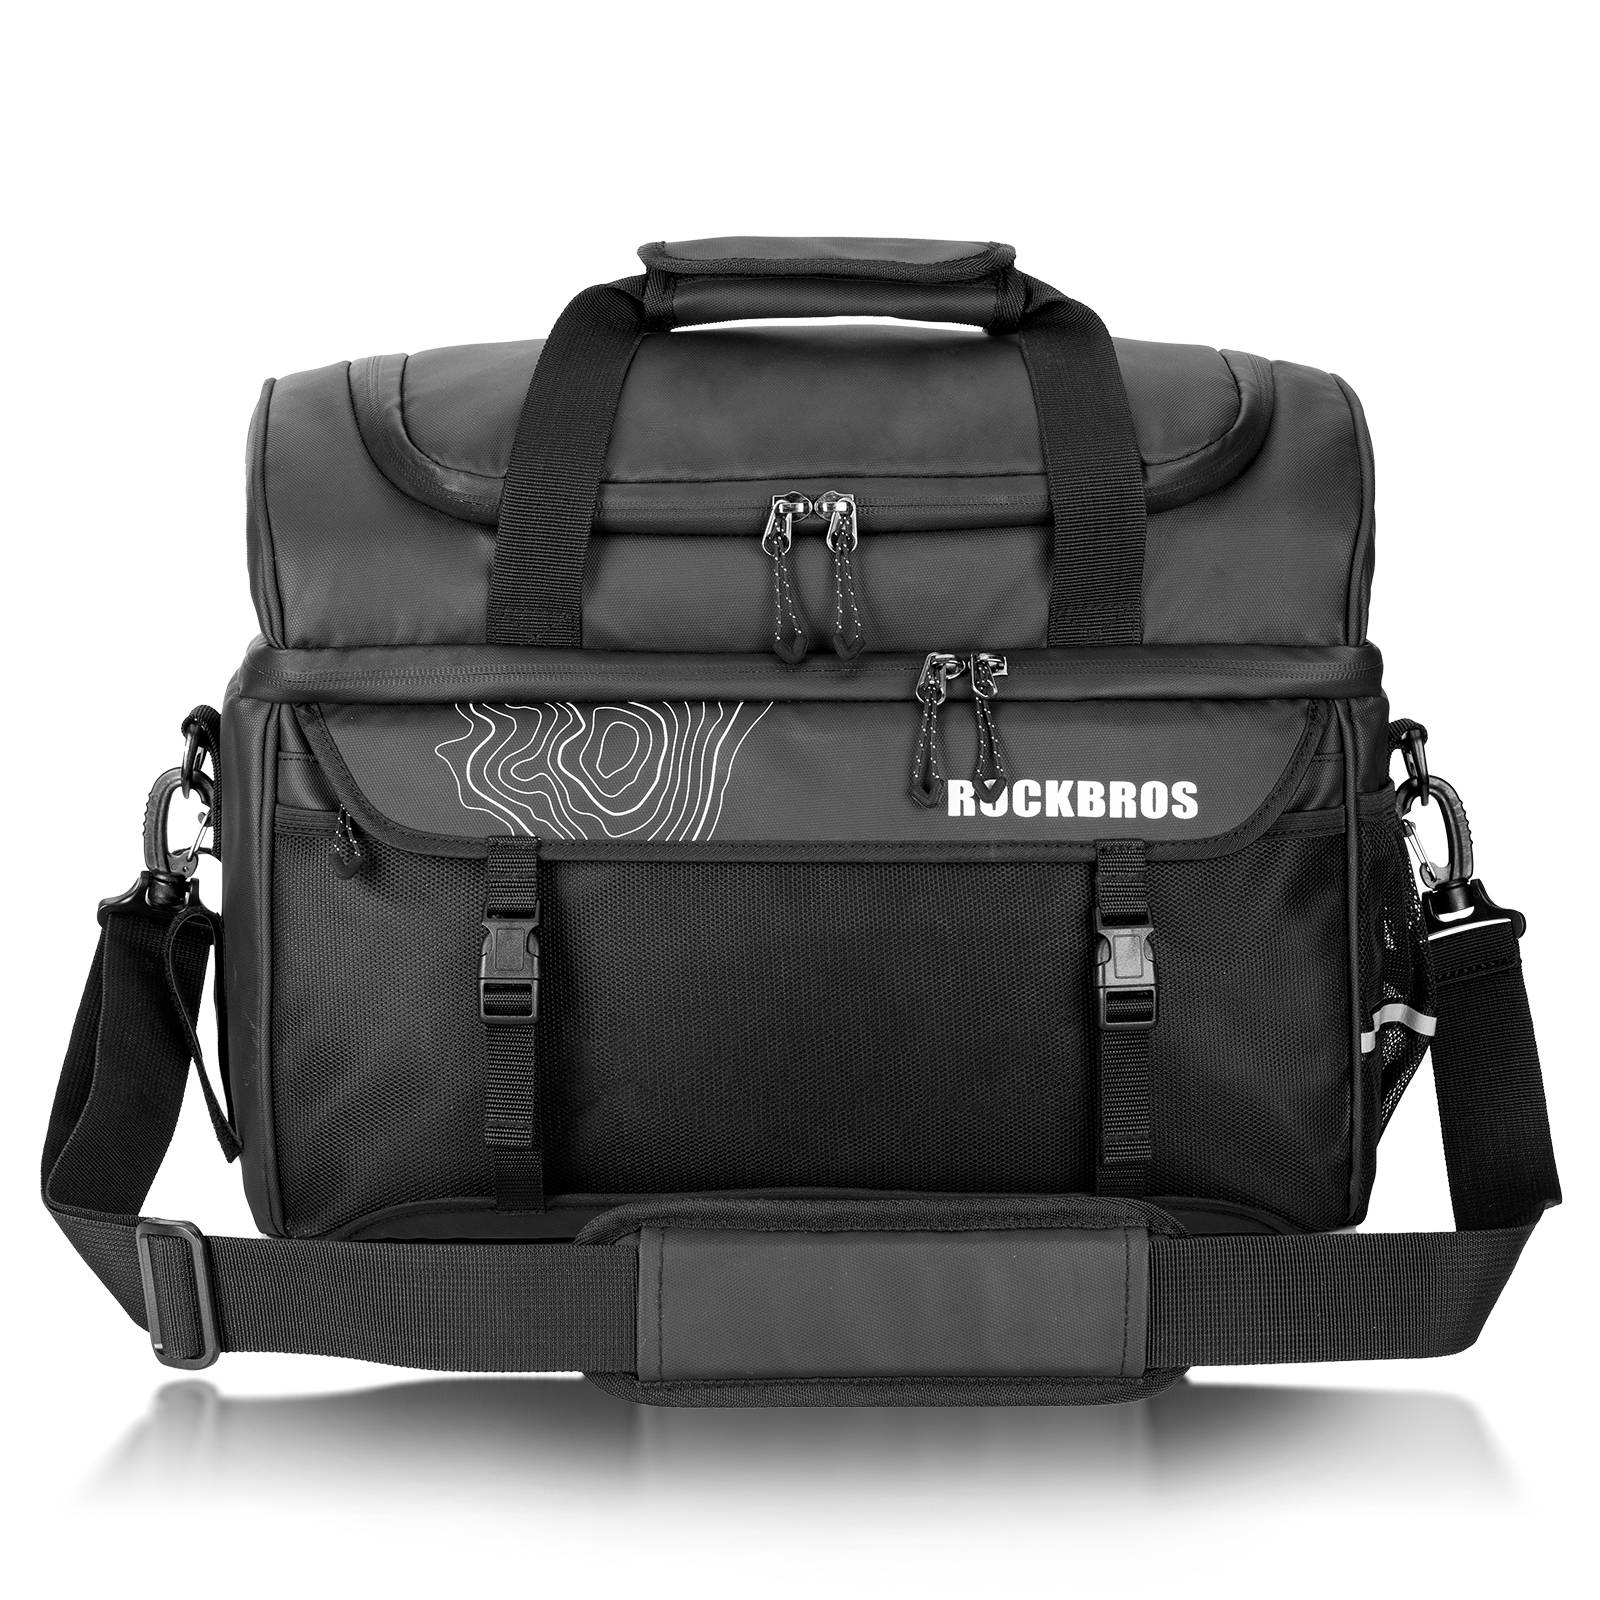 ROCKBROS Gepäckträgertasche Kühltasche mit Schultergurt 11L